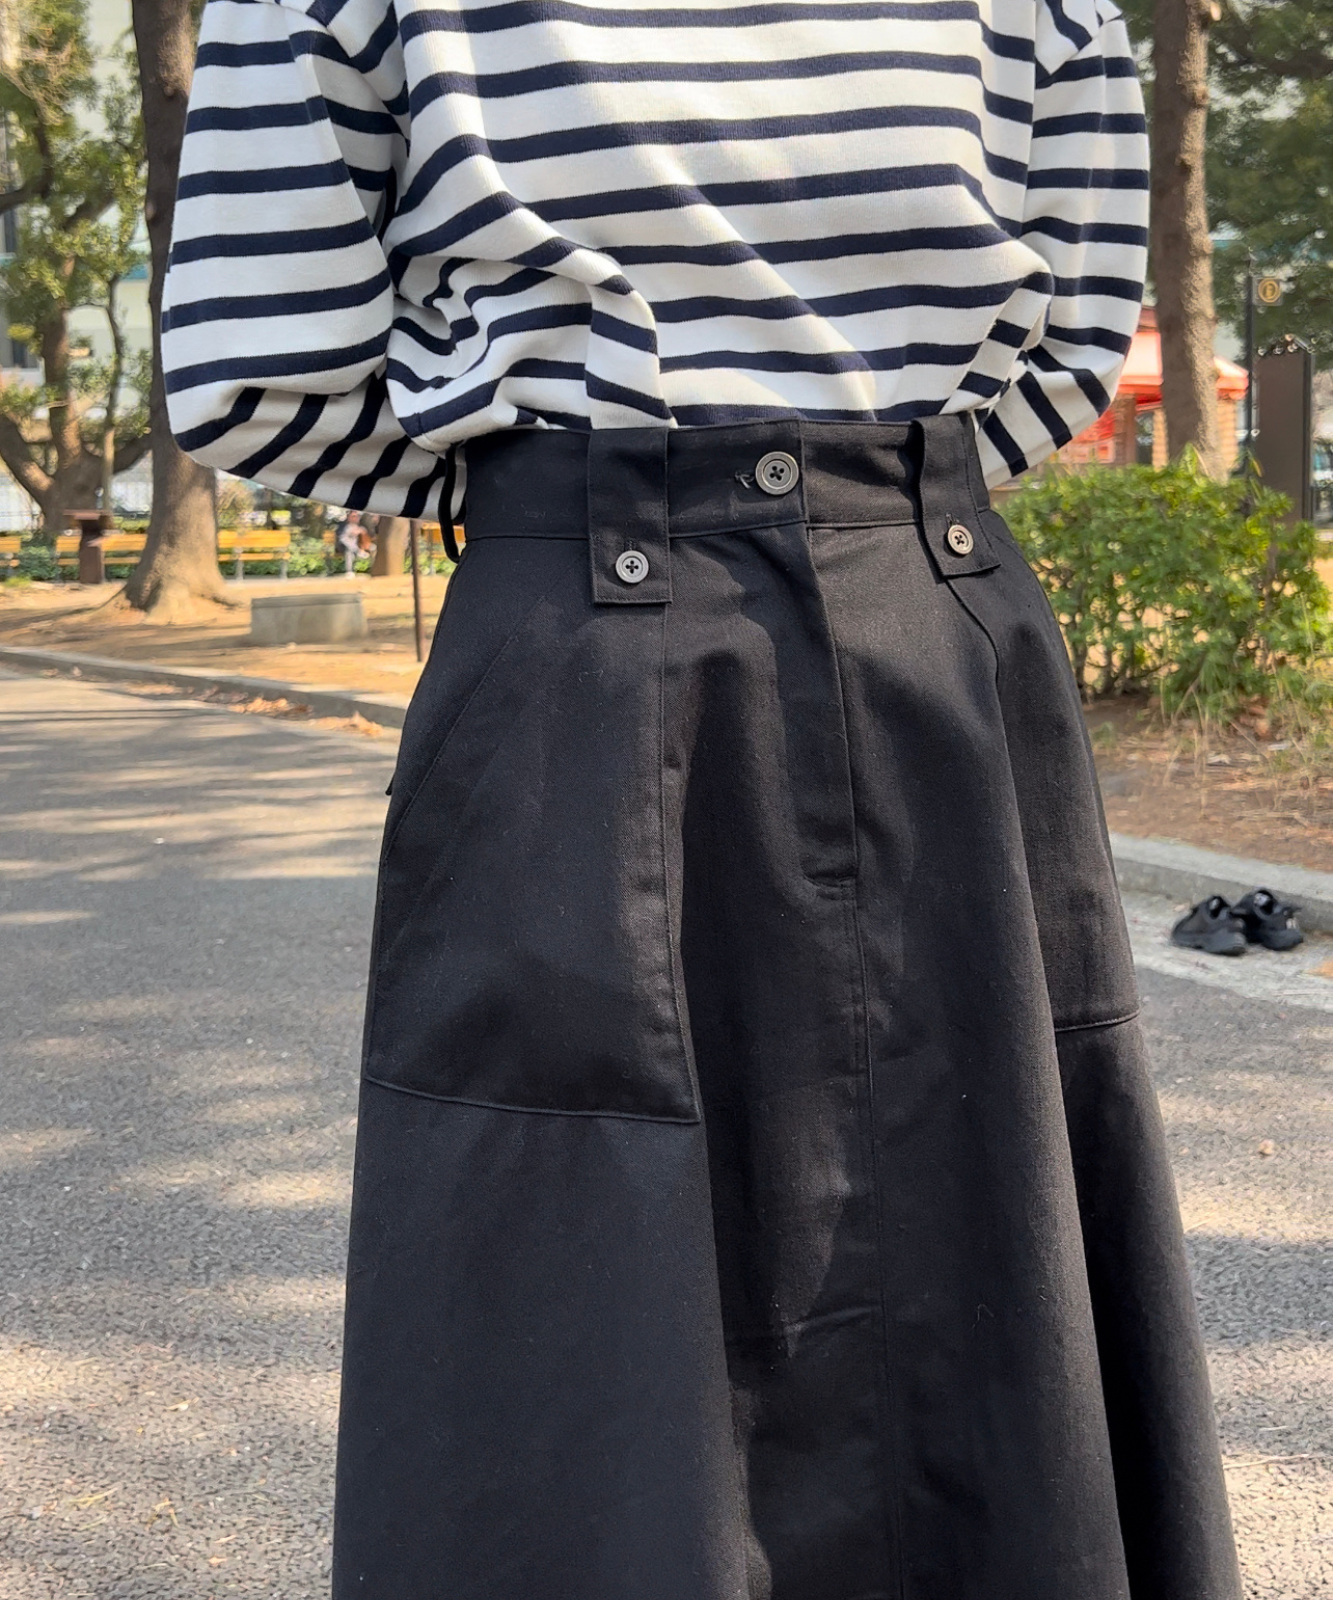 ≪在庫販売≫cotton flare skirt（コットンフレアスカート）≪2023年8月1日19:00販売開始≫